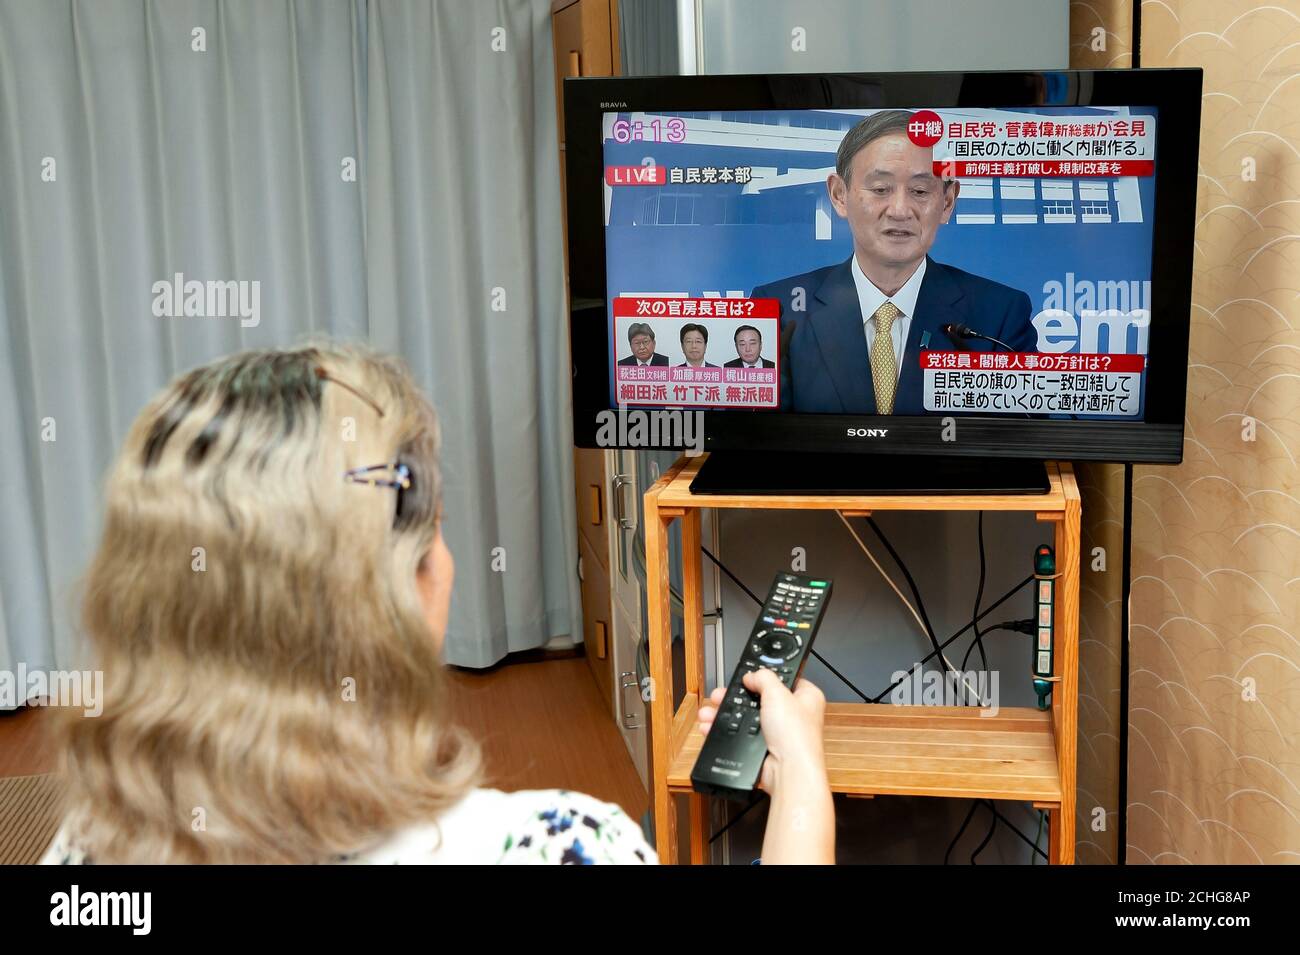 Mujer ve la conferencia de prensa transmitida en vivo por la televisión japonesa por Yoshihihihihide Suga, el nuevo líder del Partido Liberal Democrático (PDL). Foto de stock